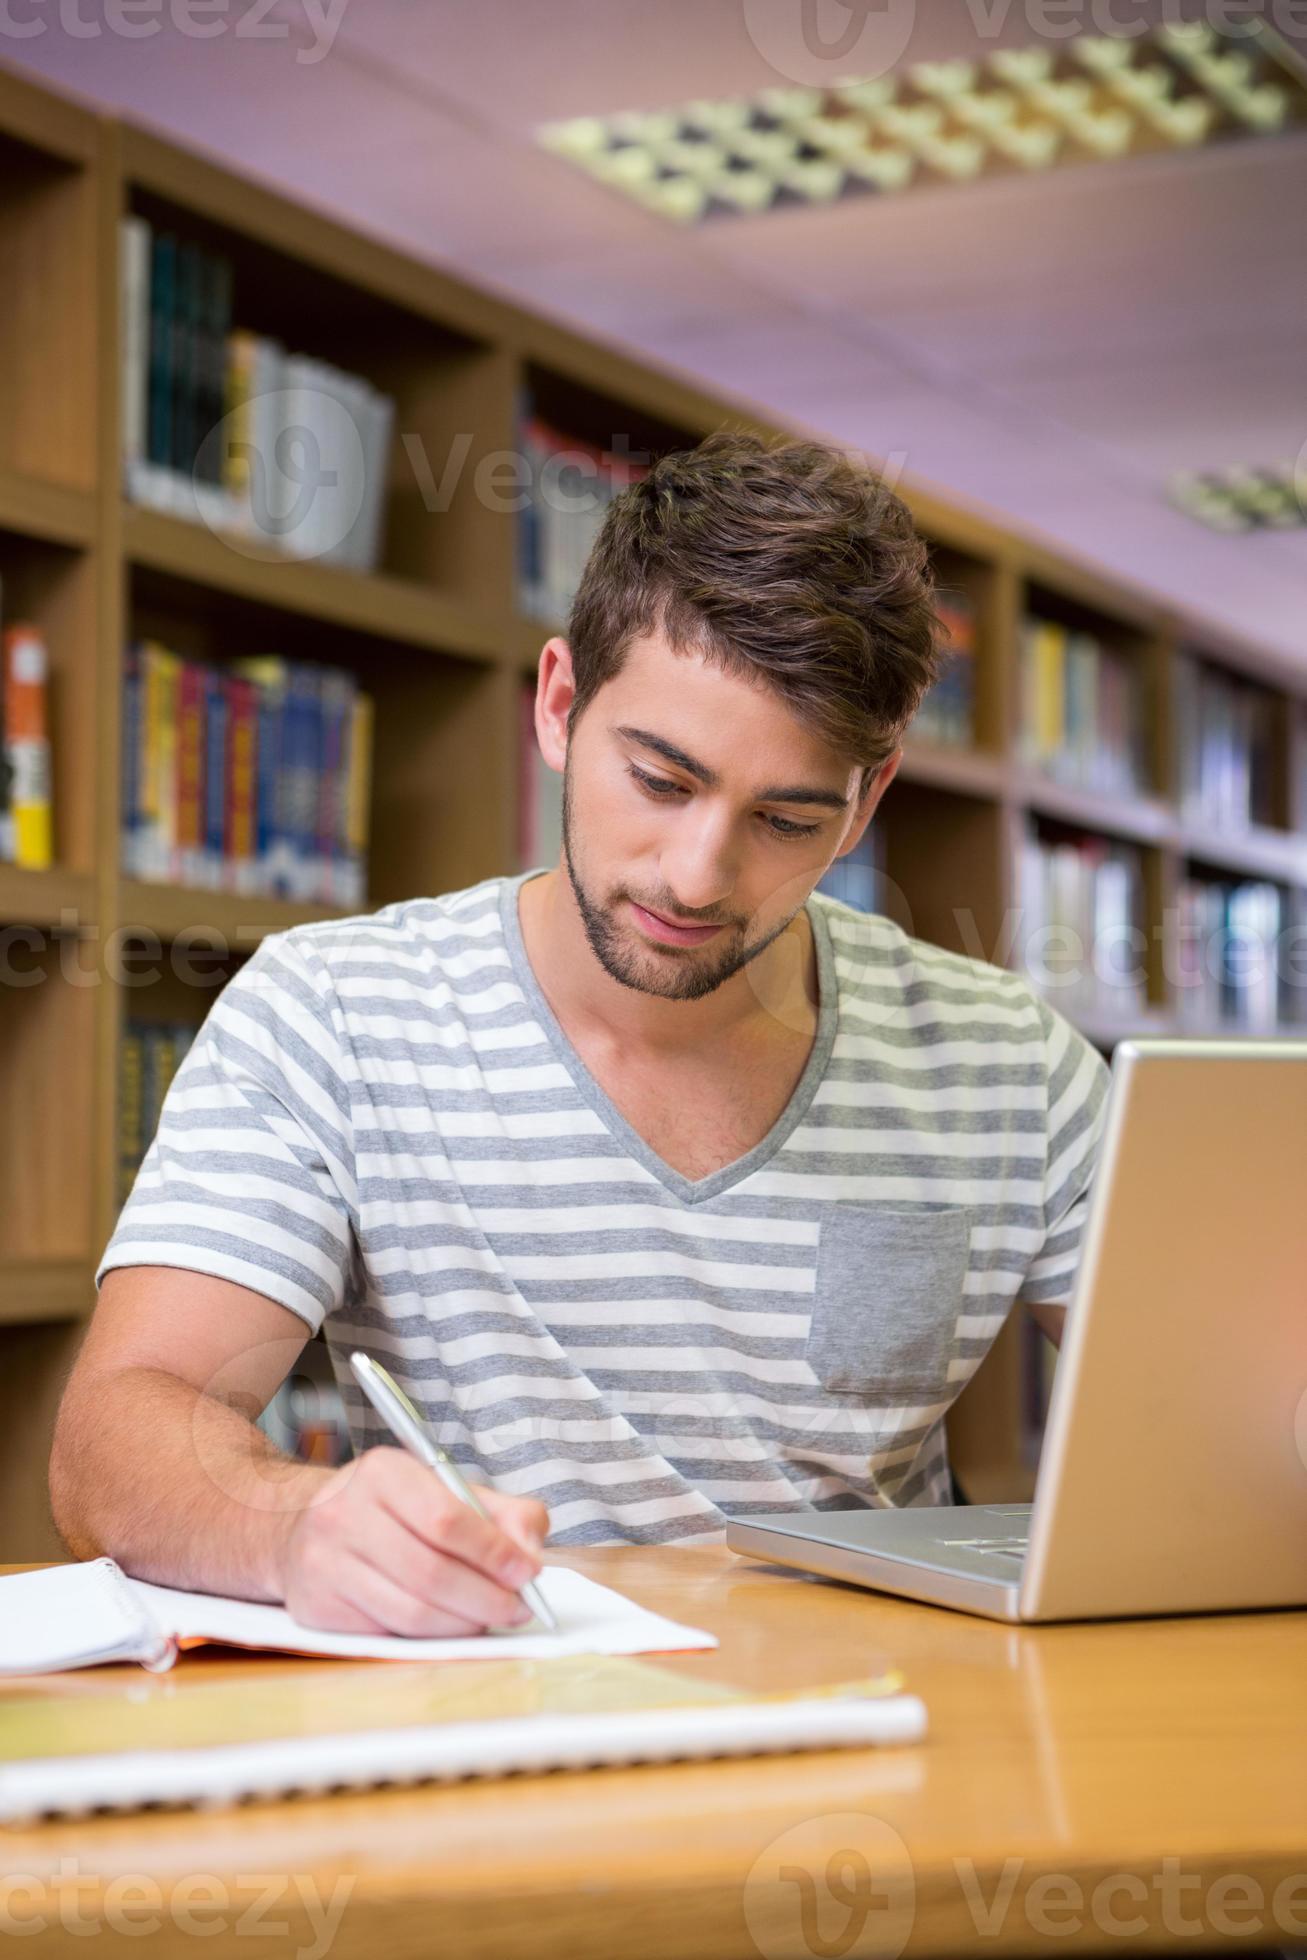 student studeert in de bibliotheek met laptop foto